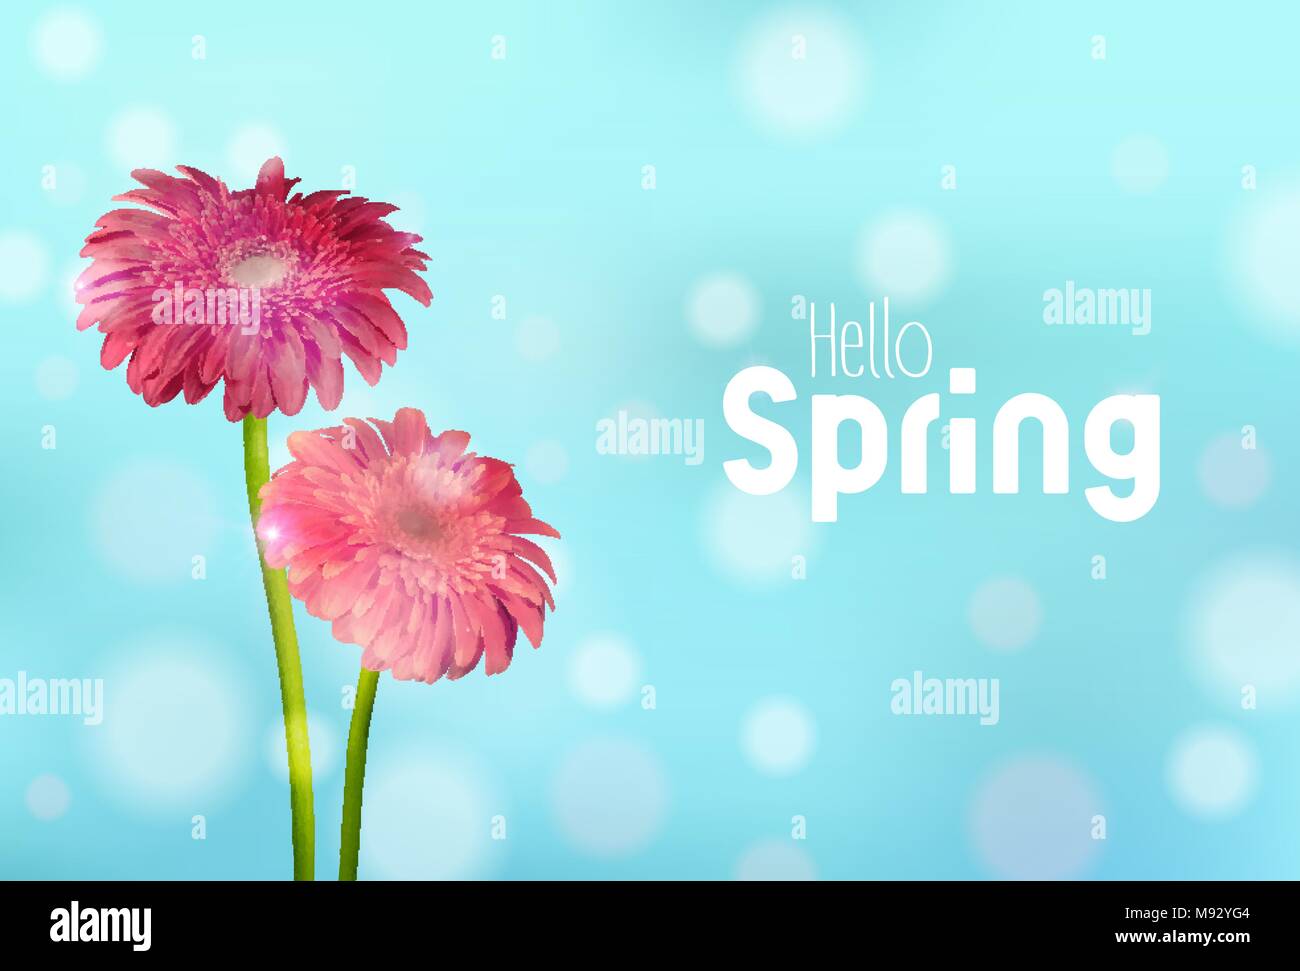 Bonjour Printemps carte de souhaits illustration avec fleurs daisy rose et fond de ciel bleu. Vecteur EPS10. Illustration de Vecteur